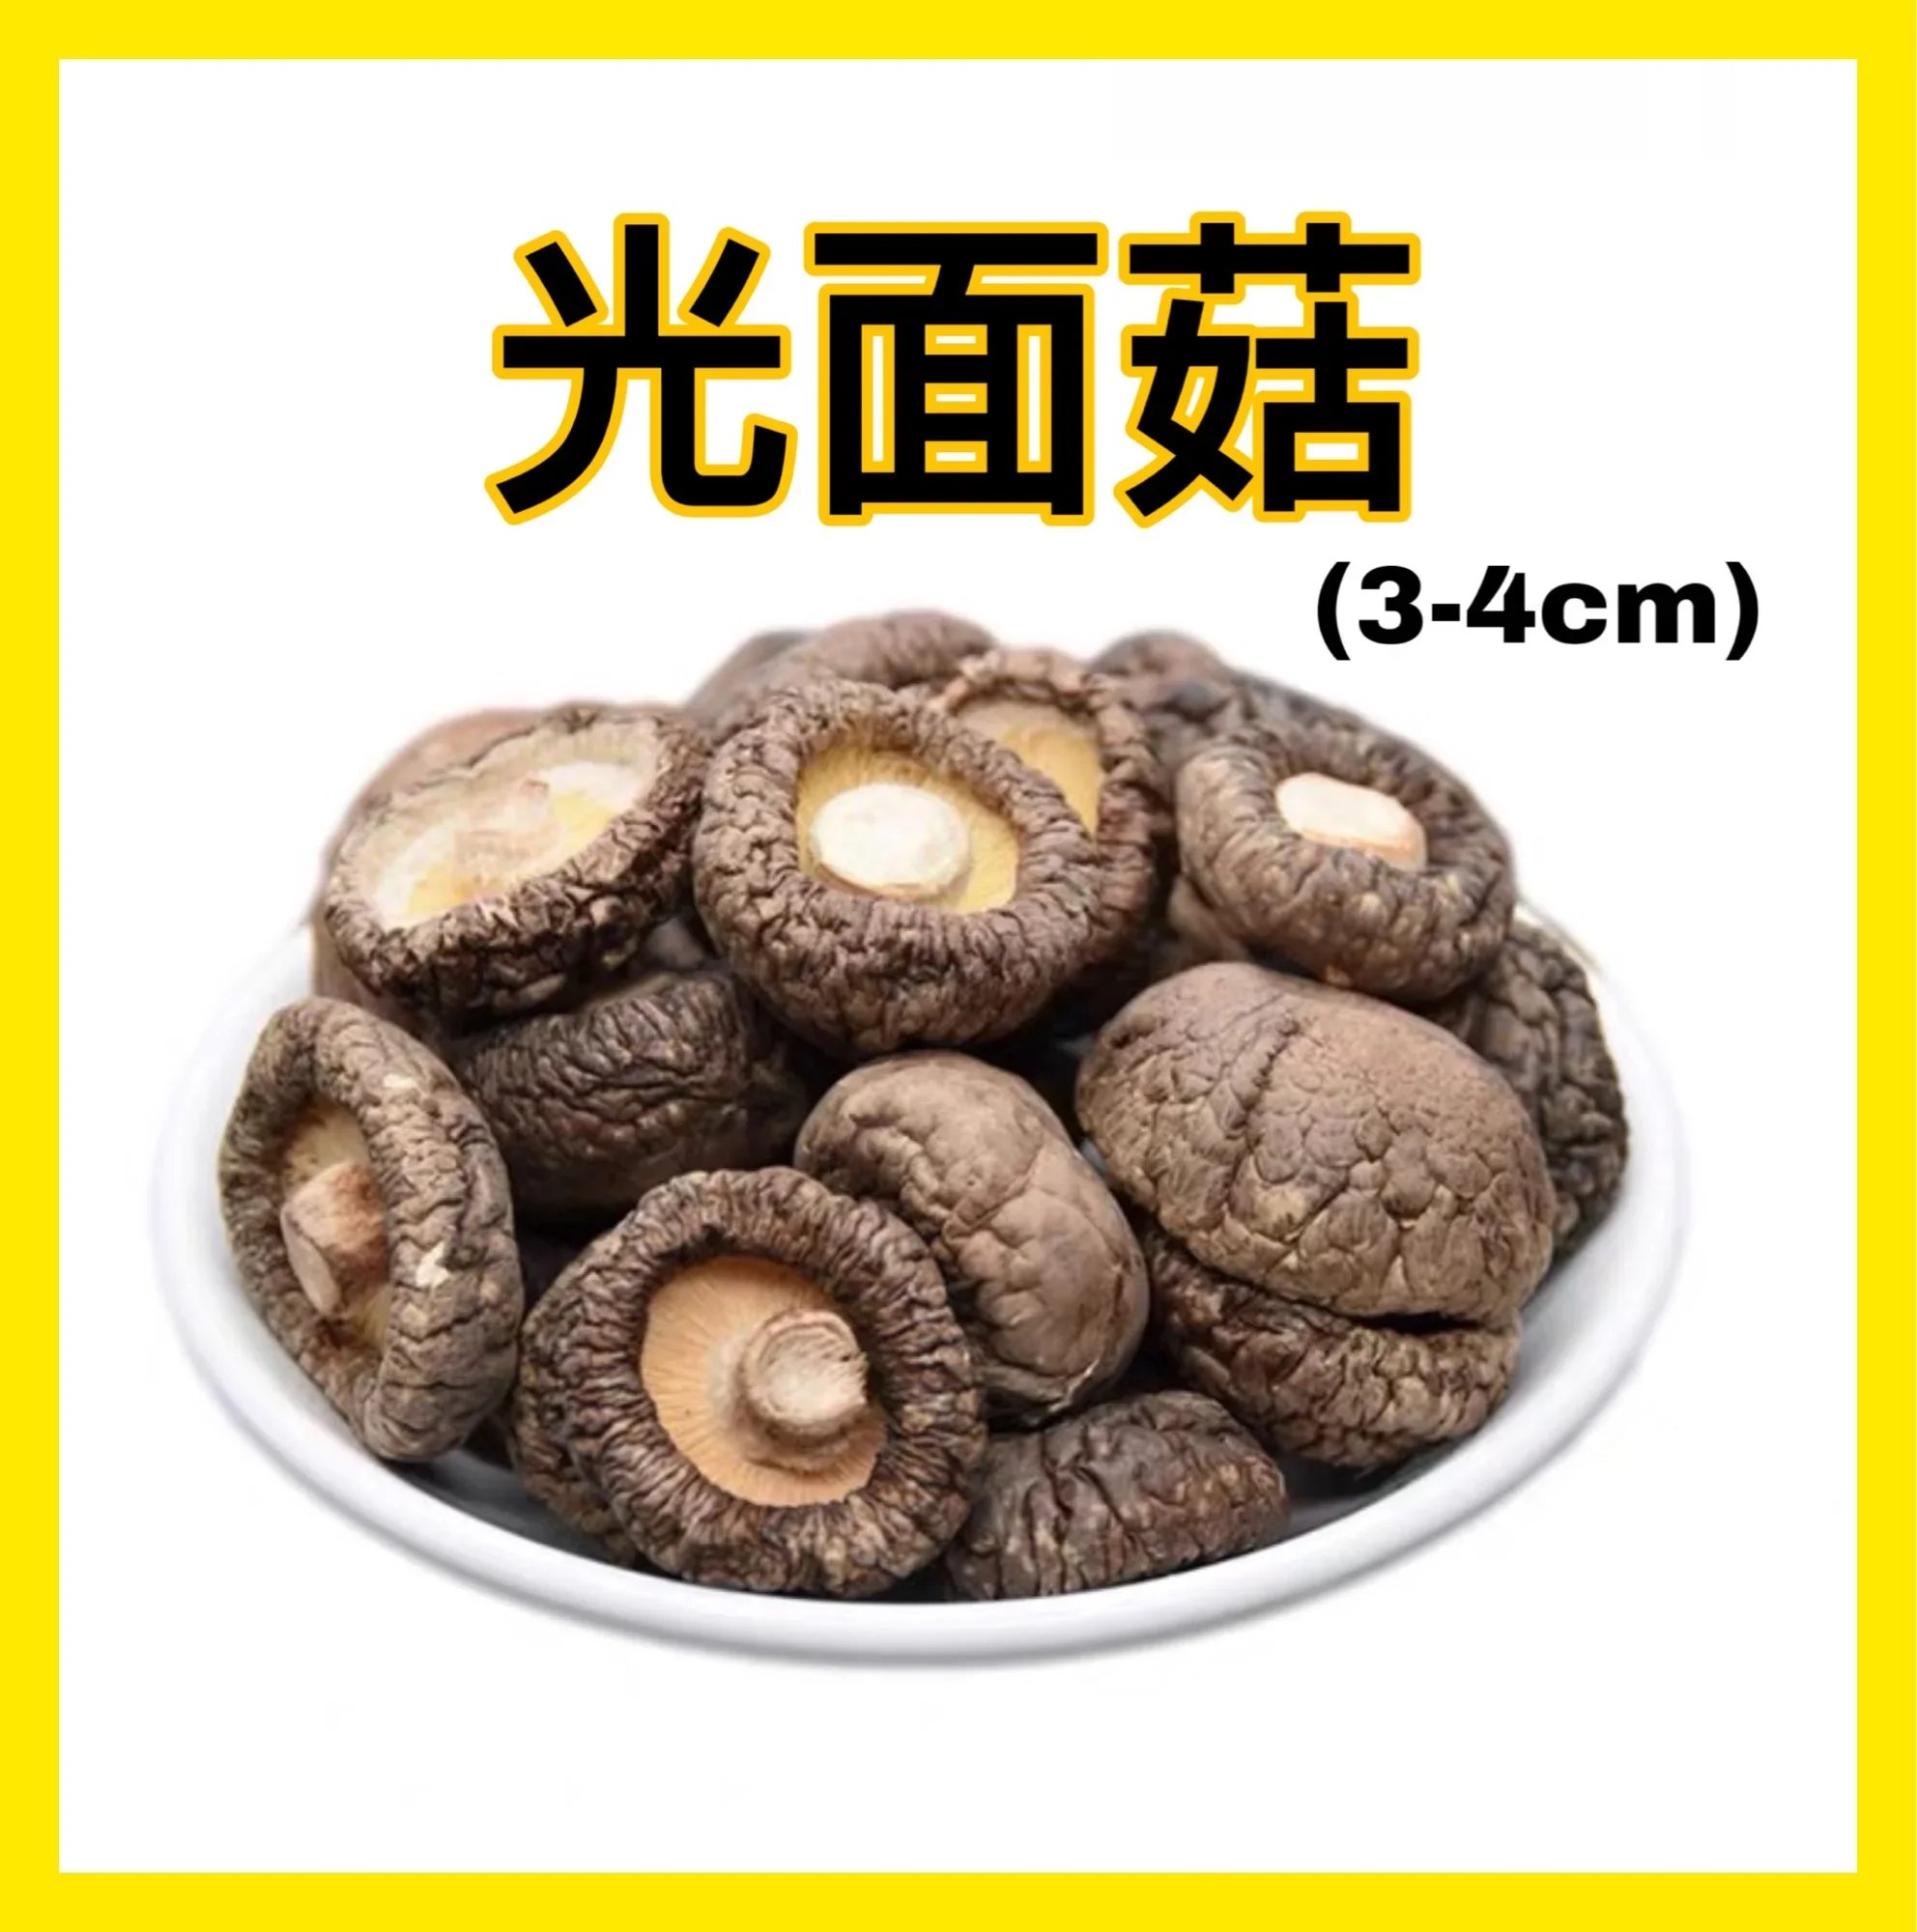 No Sulphur Dried Mushroom 3-4cm 光面菇/香菇干100g/ Sulphur Free dried mushroom